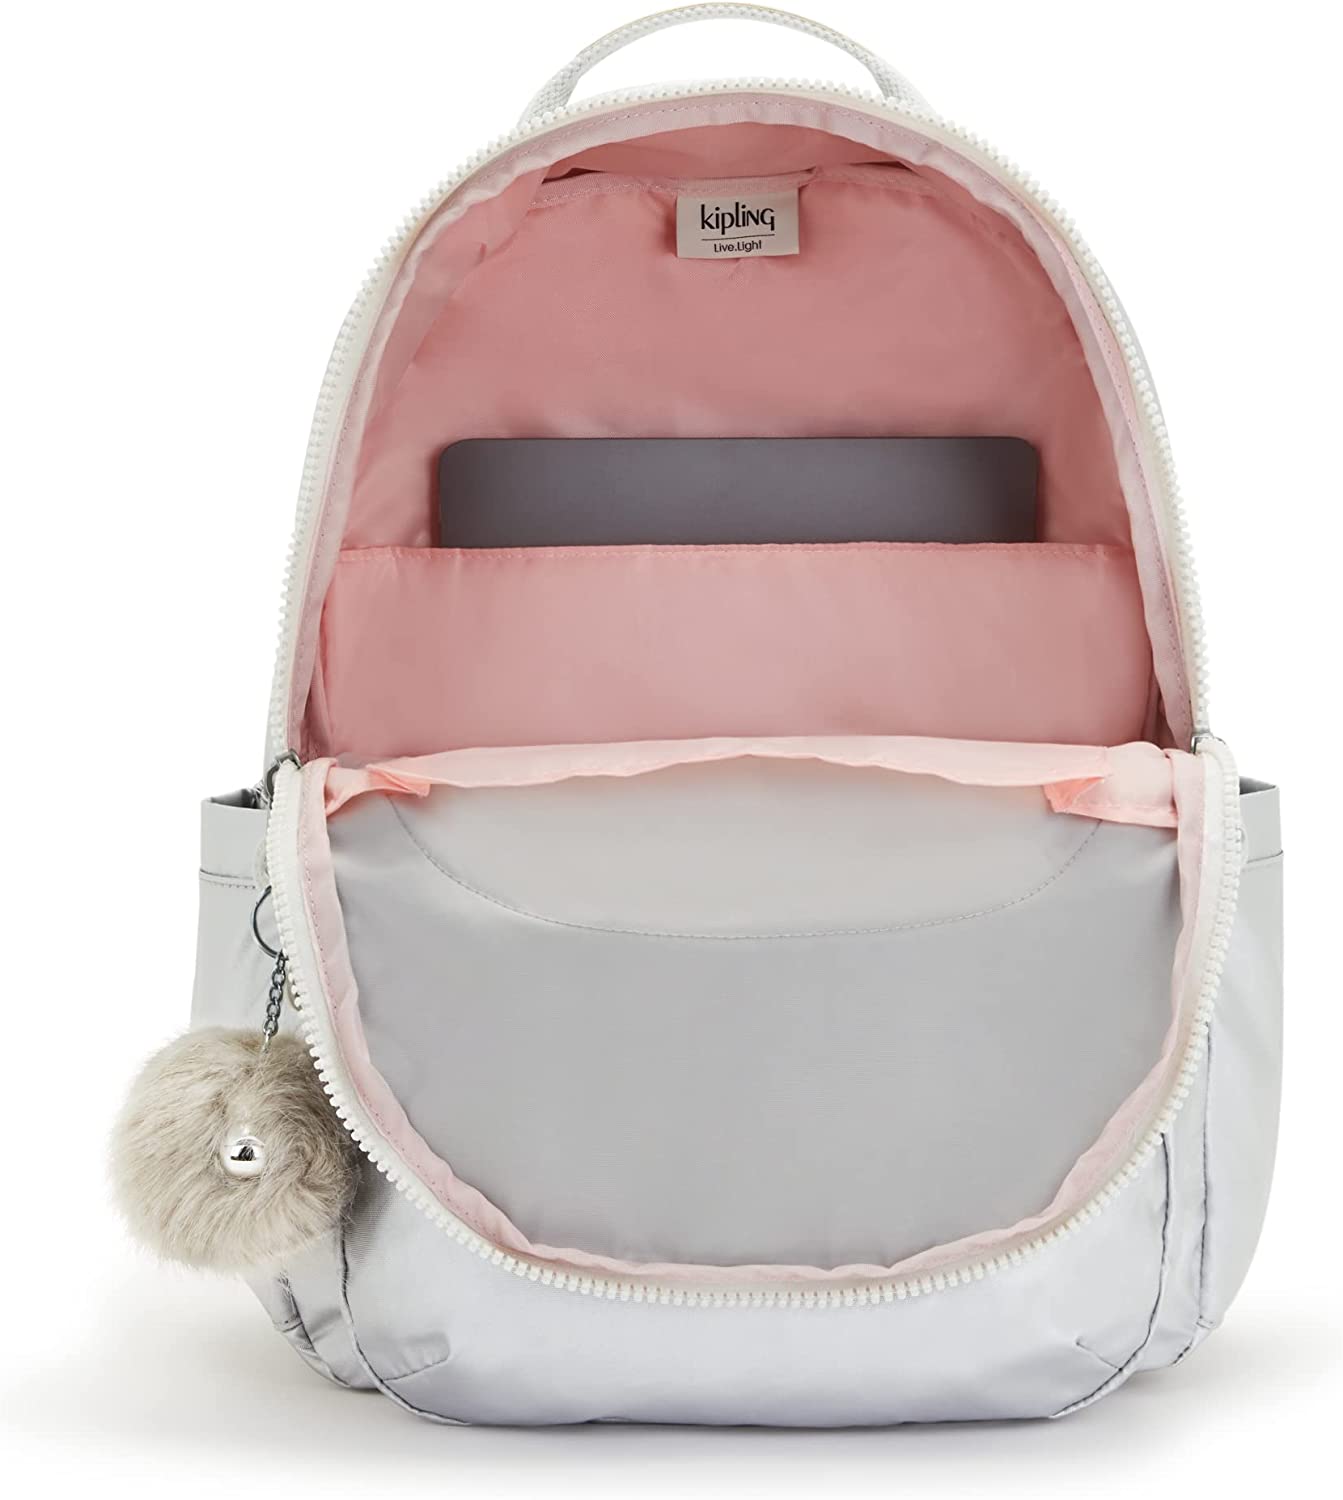 Kipling Seoul Extra Large 17 Laptop Backpack - Monster Pink